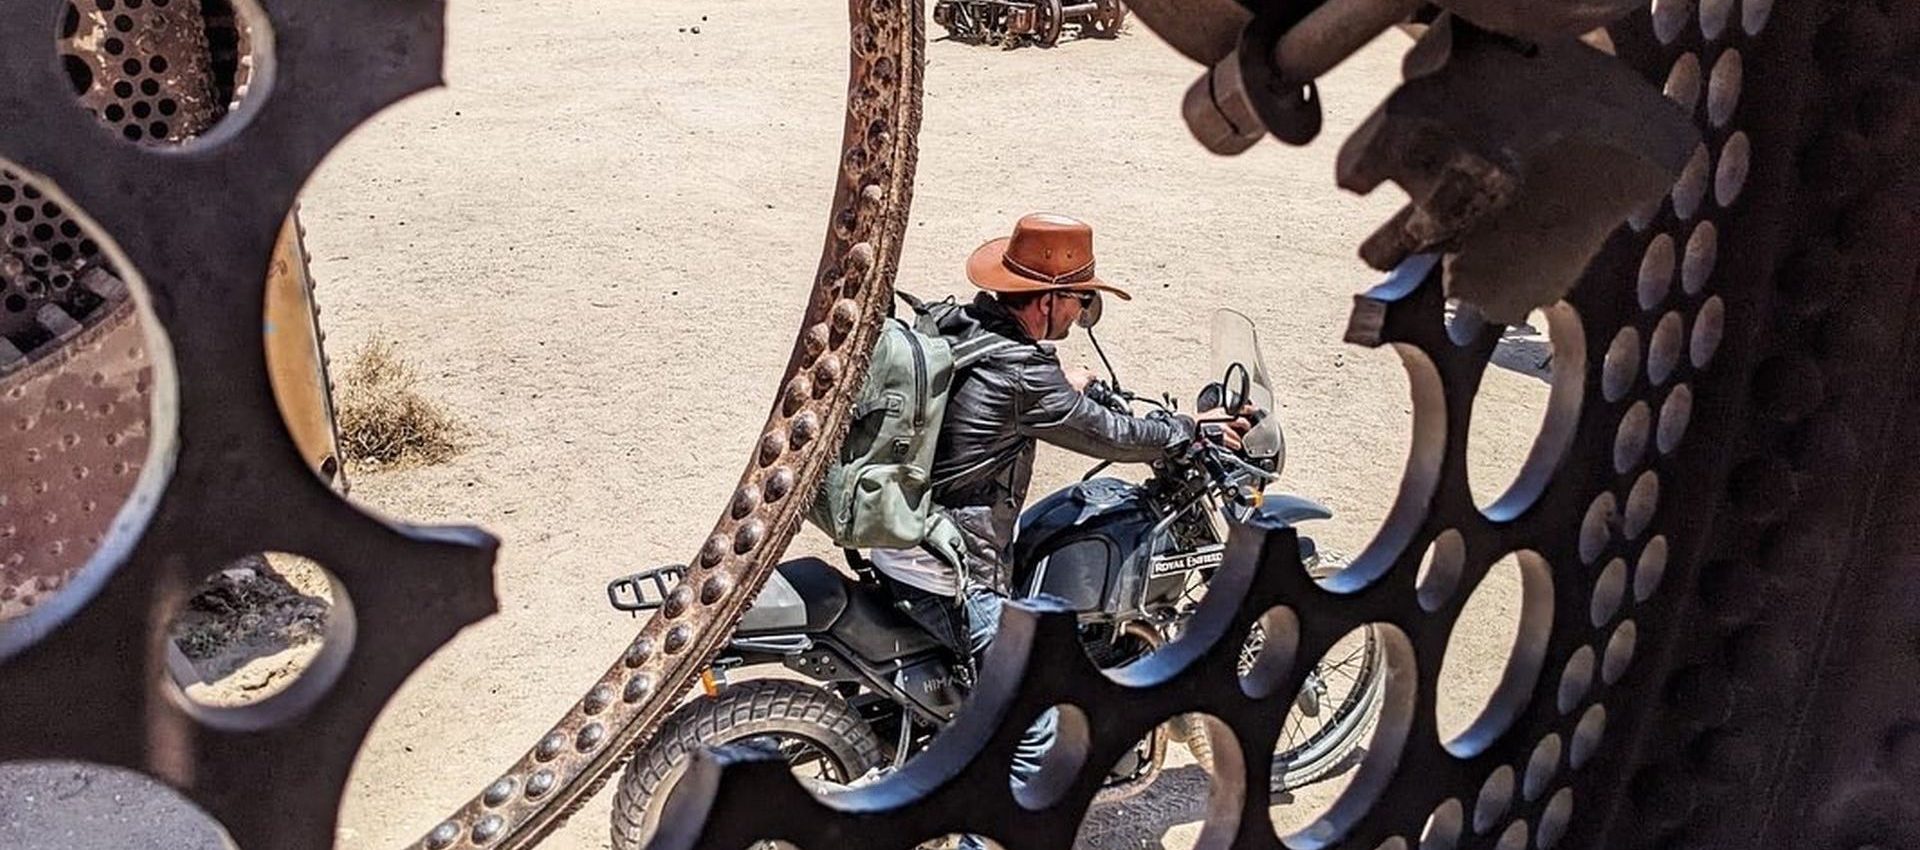 GoBeyond | Bolivia Motorcycle tour